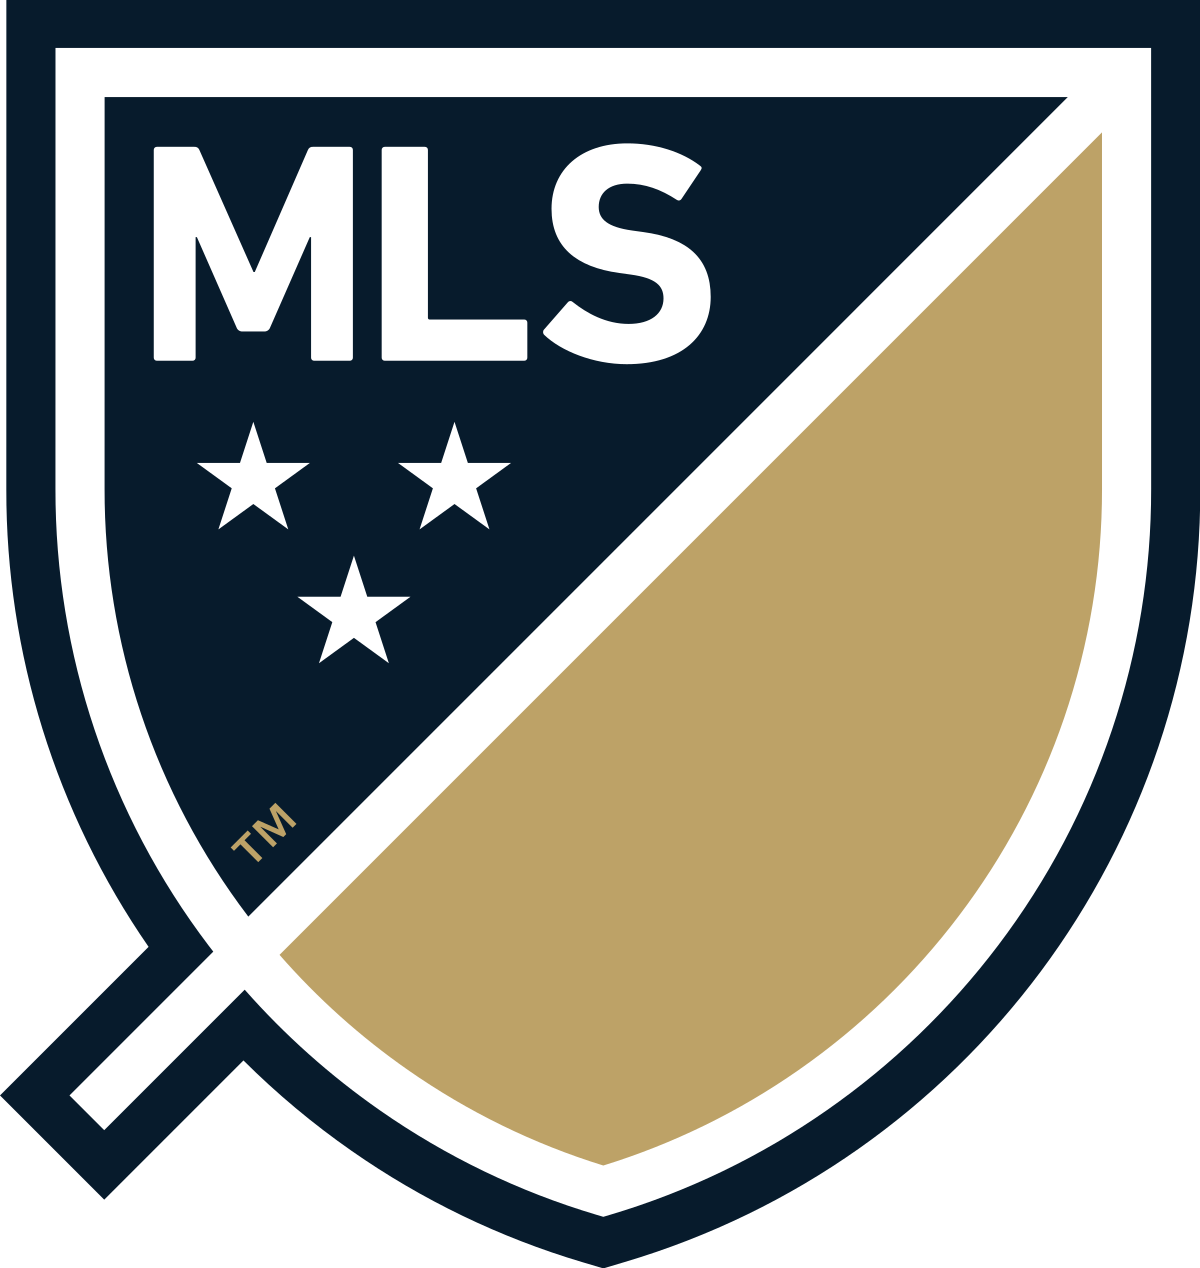 MLS Crest - PHI